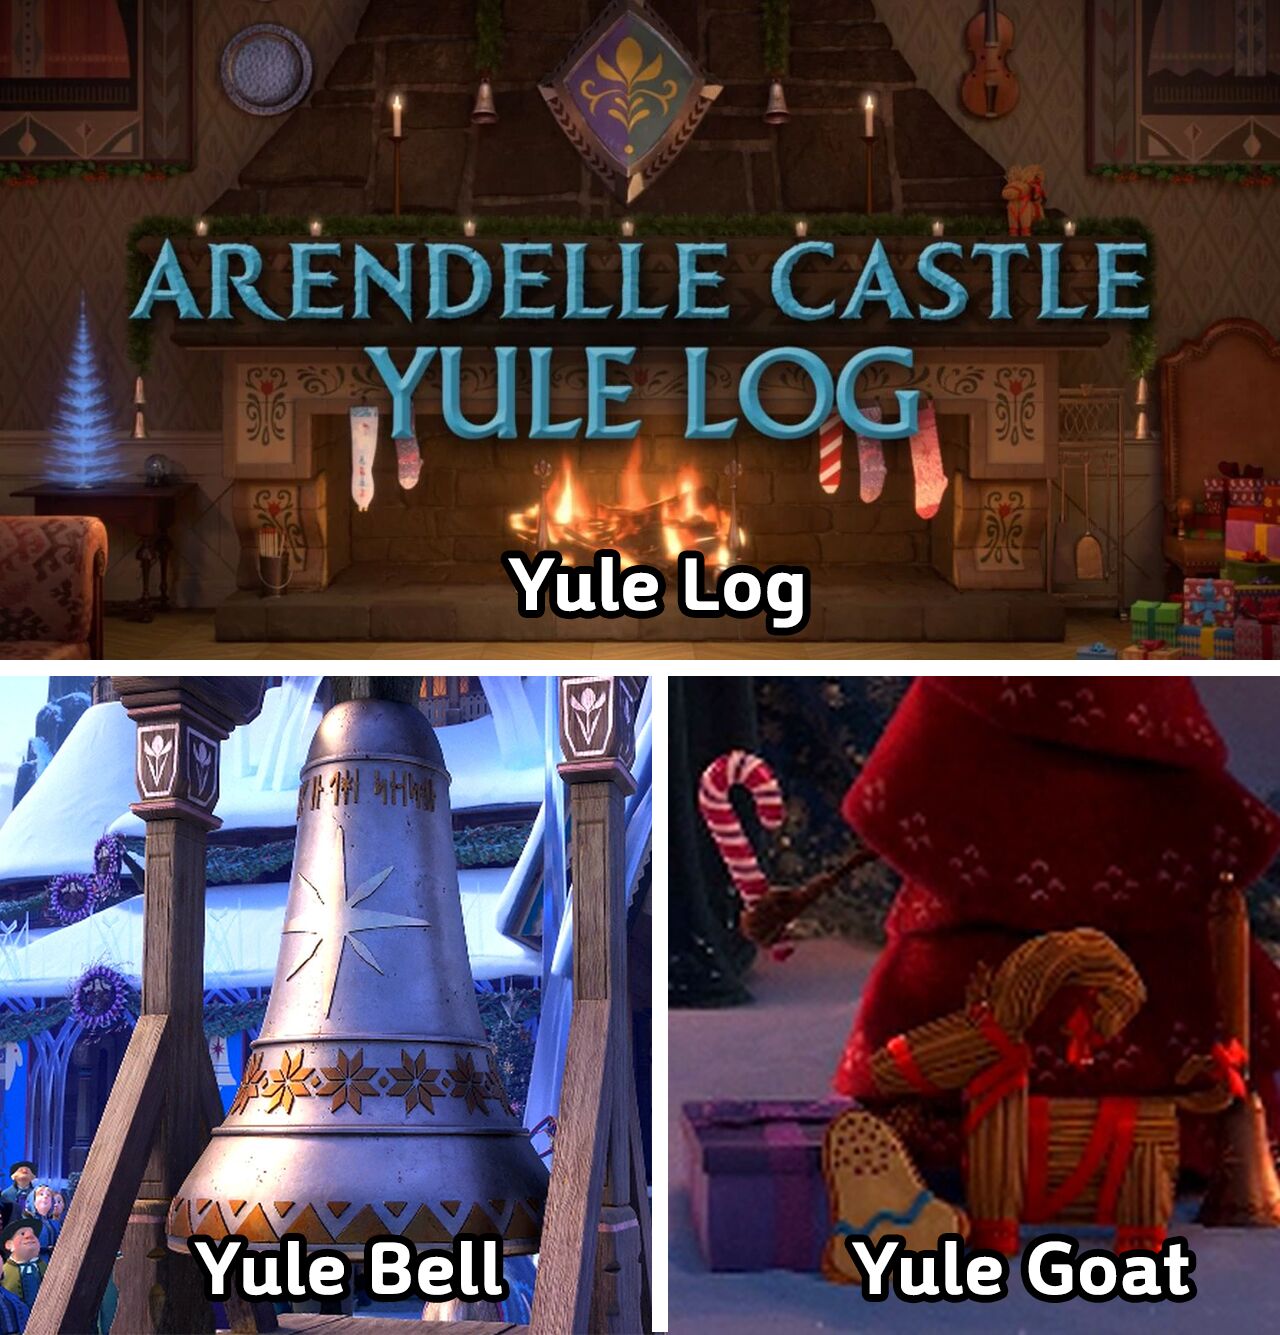 올벤처 속 등장하는 yule bell, yule log, yule goat의 모습